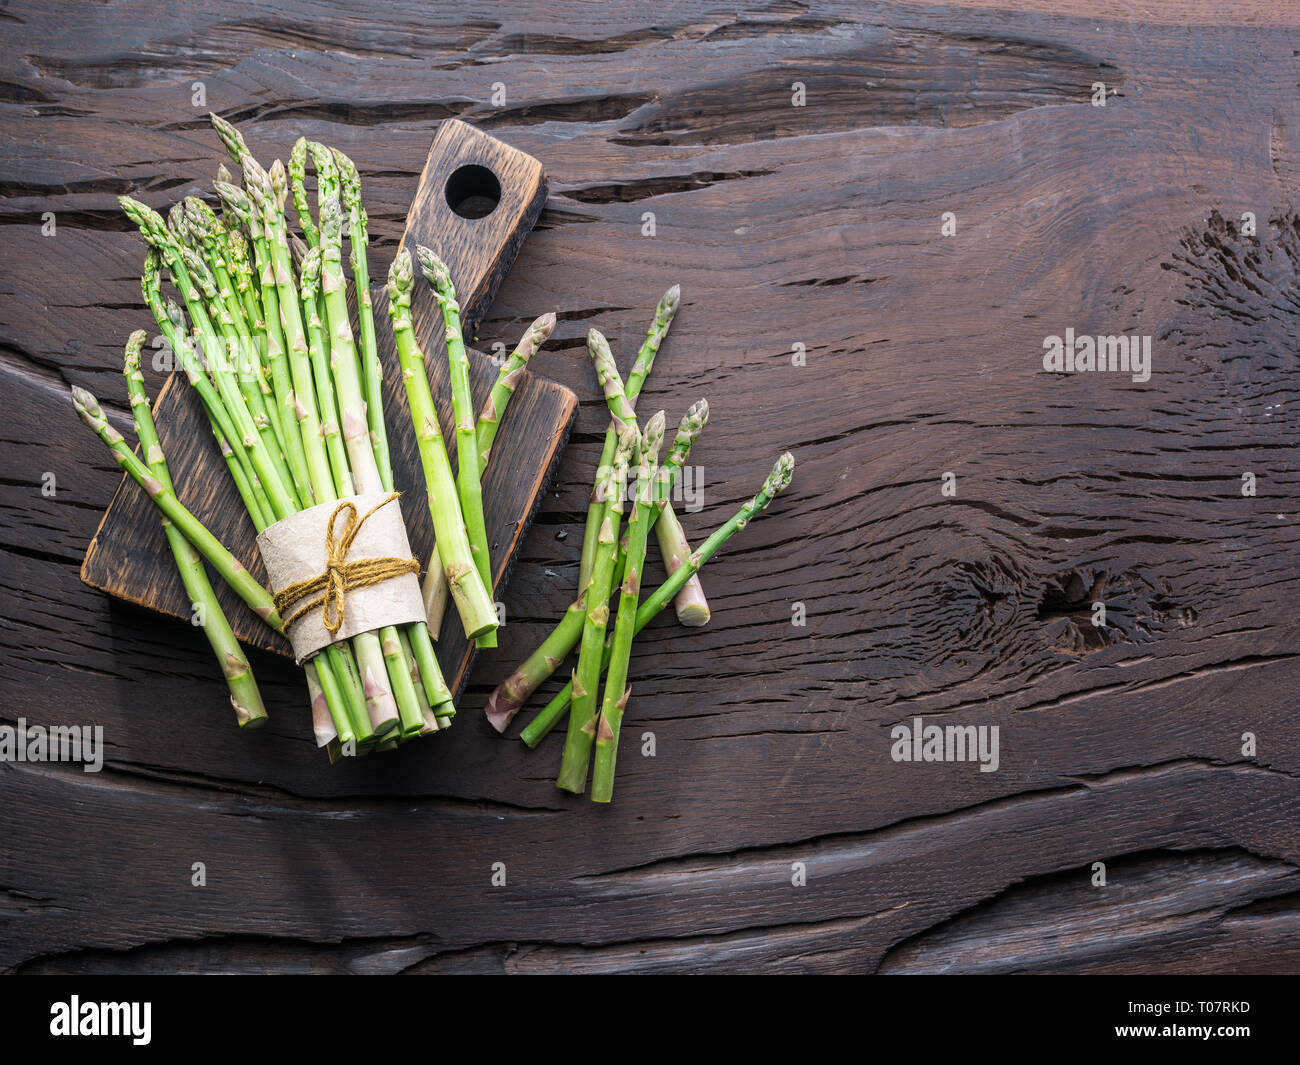 Les jeunes pousses d'asperges vertes sur table en bois. Vue d'en haut. Banque D'Images